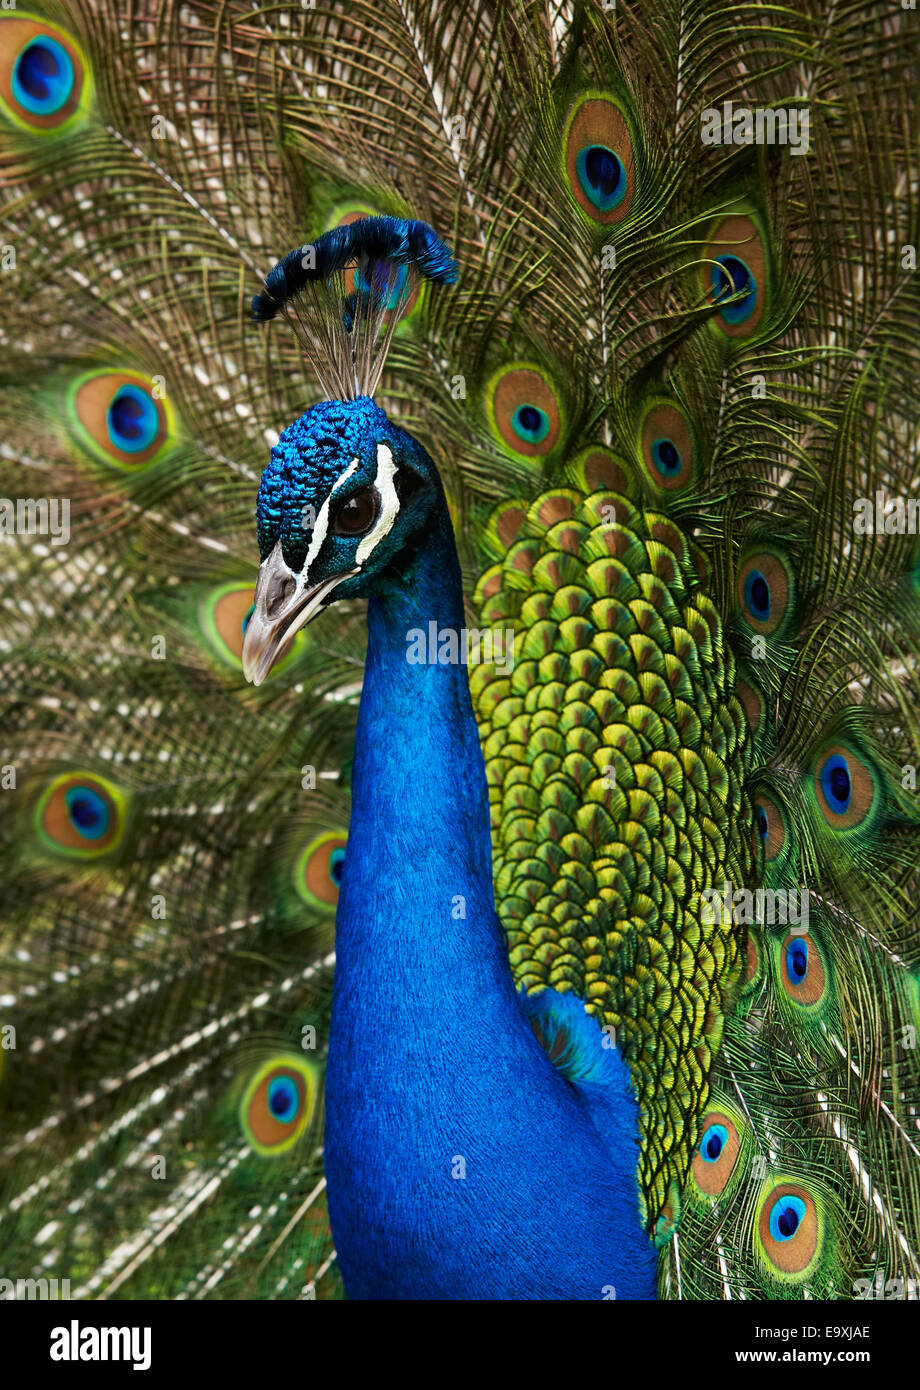 Peacock en plumaje nupcial Foto de stock